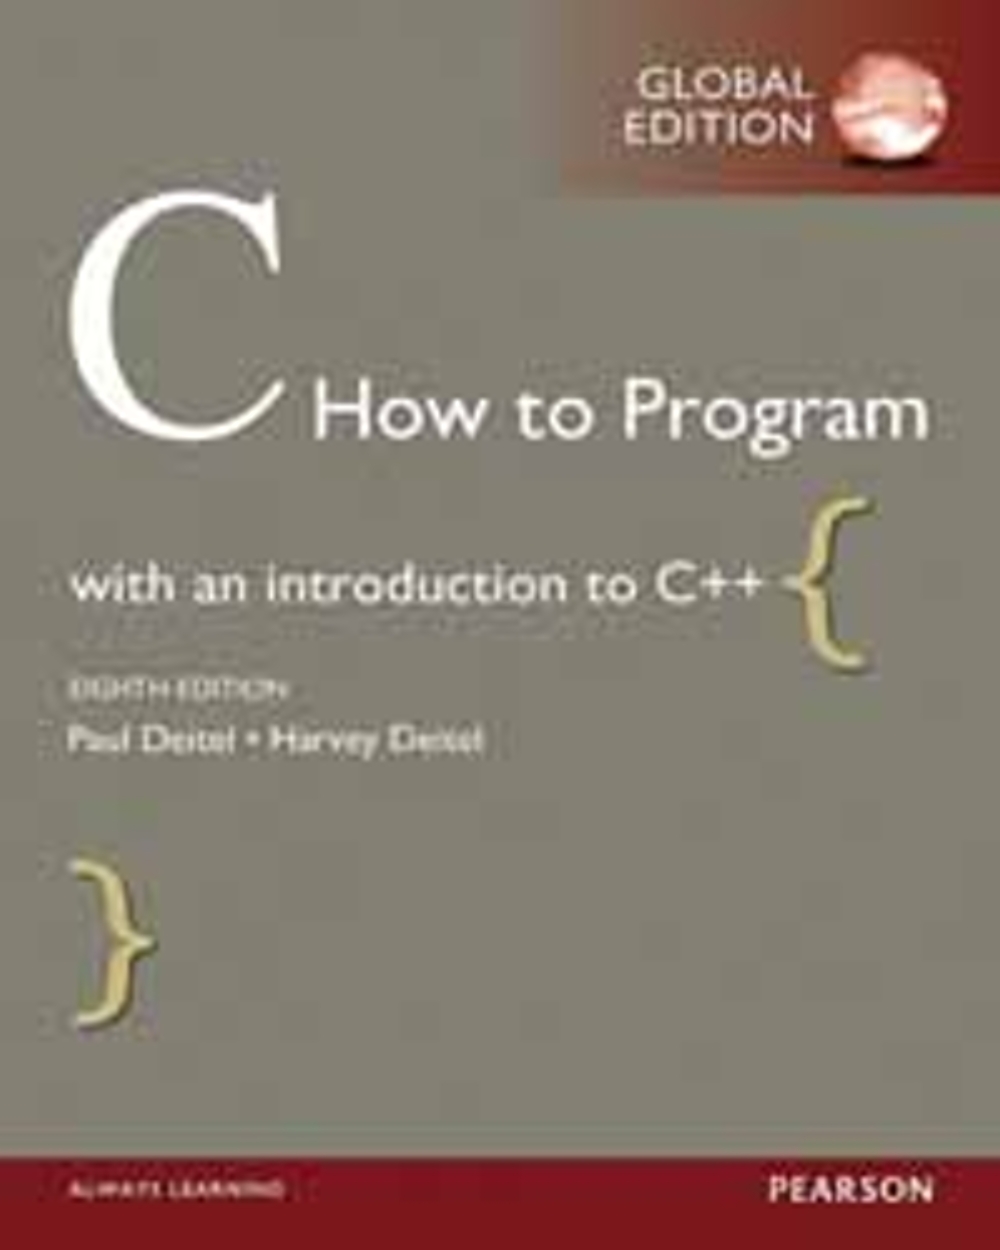 C HOW TO PROGRAM 8/E (G-PIE)